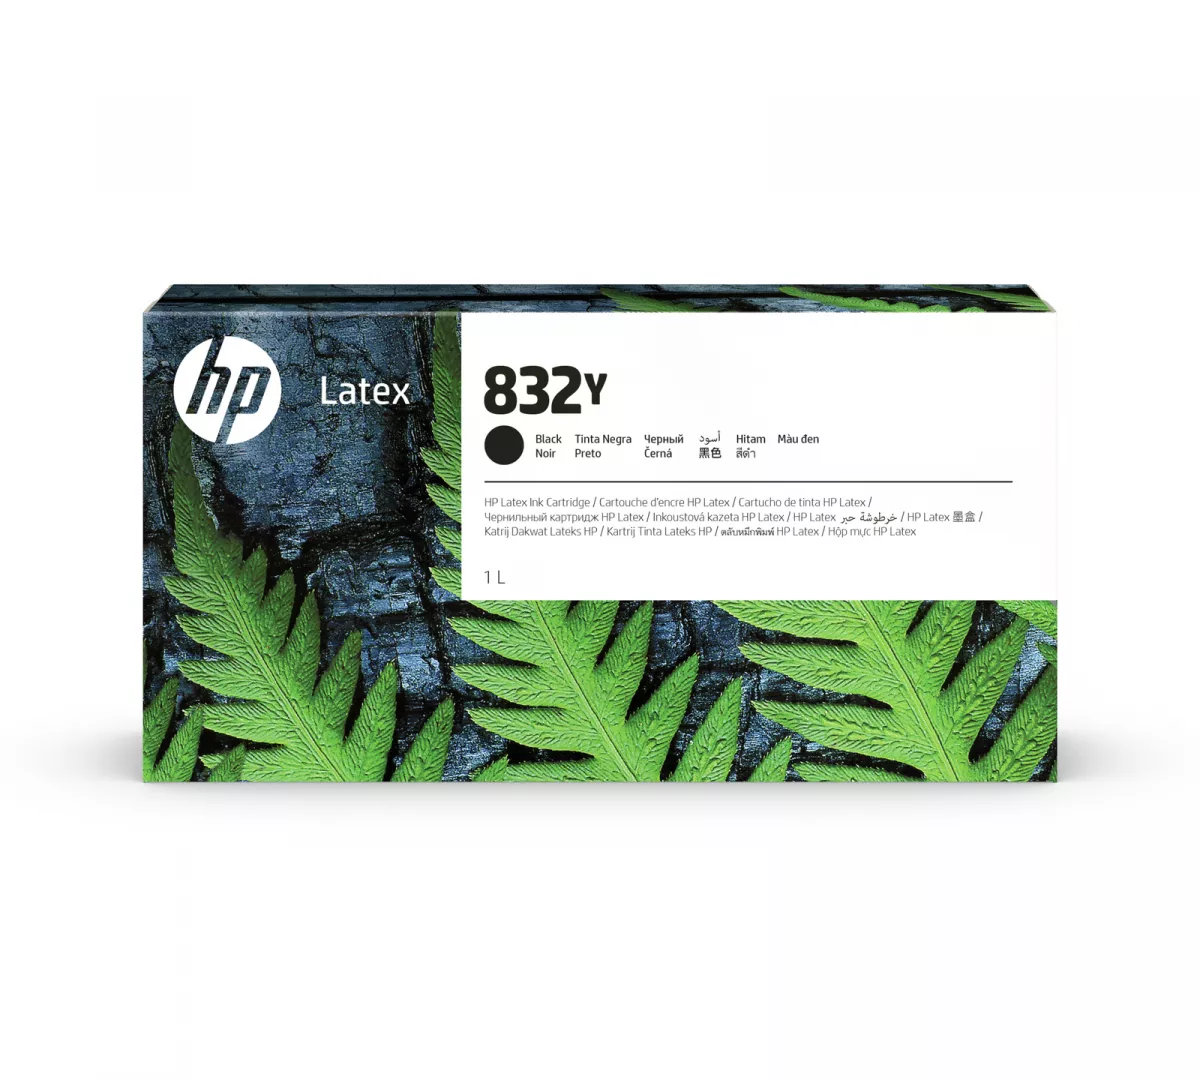 HP 832Y Black Latex Ink Cartridge 1 L 1